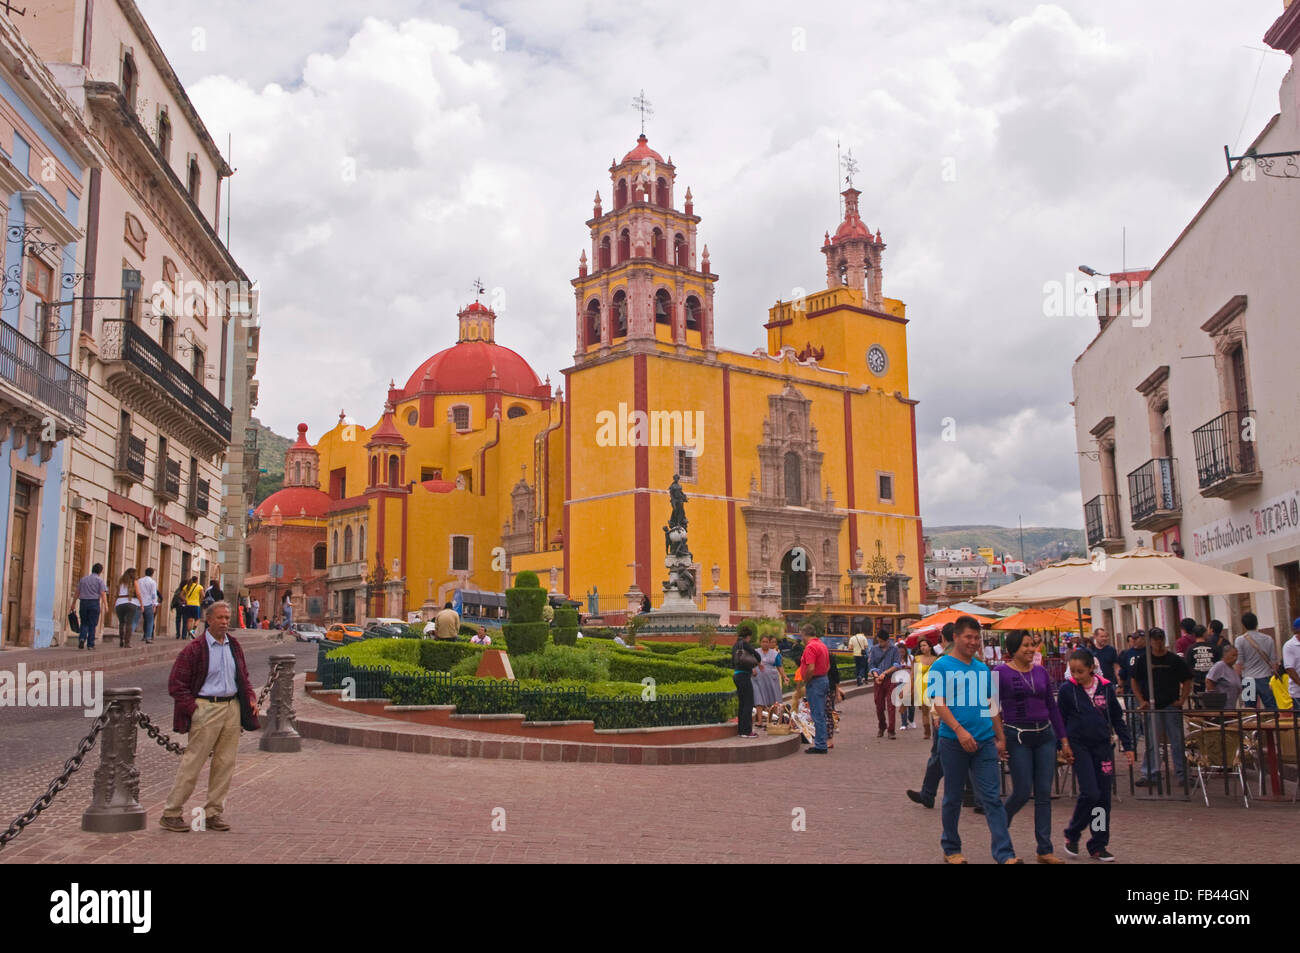 Basilica Colegiata de Nuestra Senora de Guanajuato in the UNESCO World Heritage Site city of Guanajuato, Mexico Stock Photo